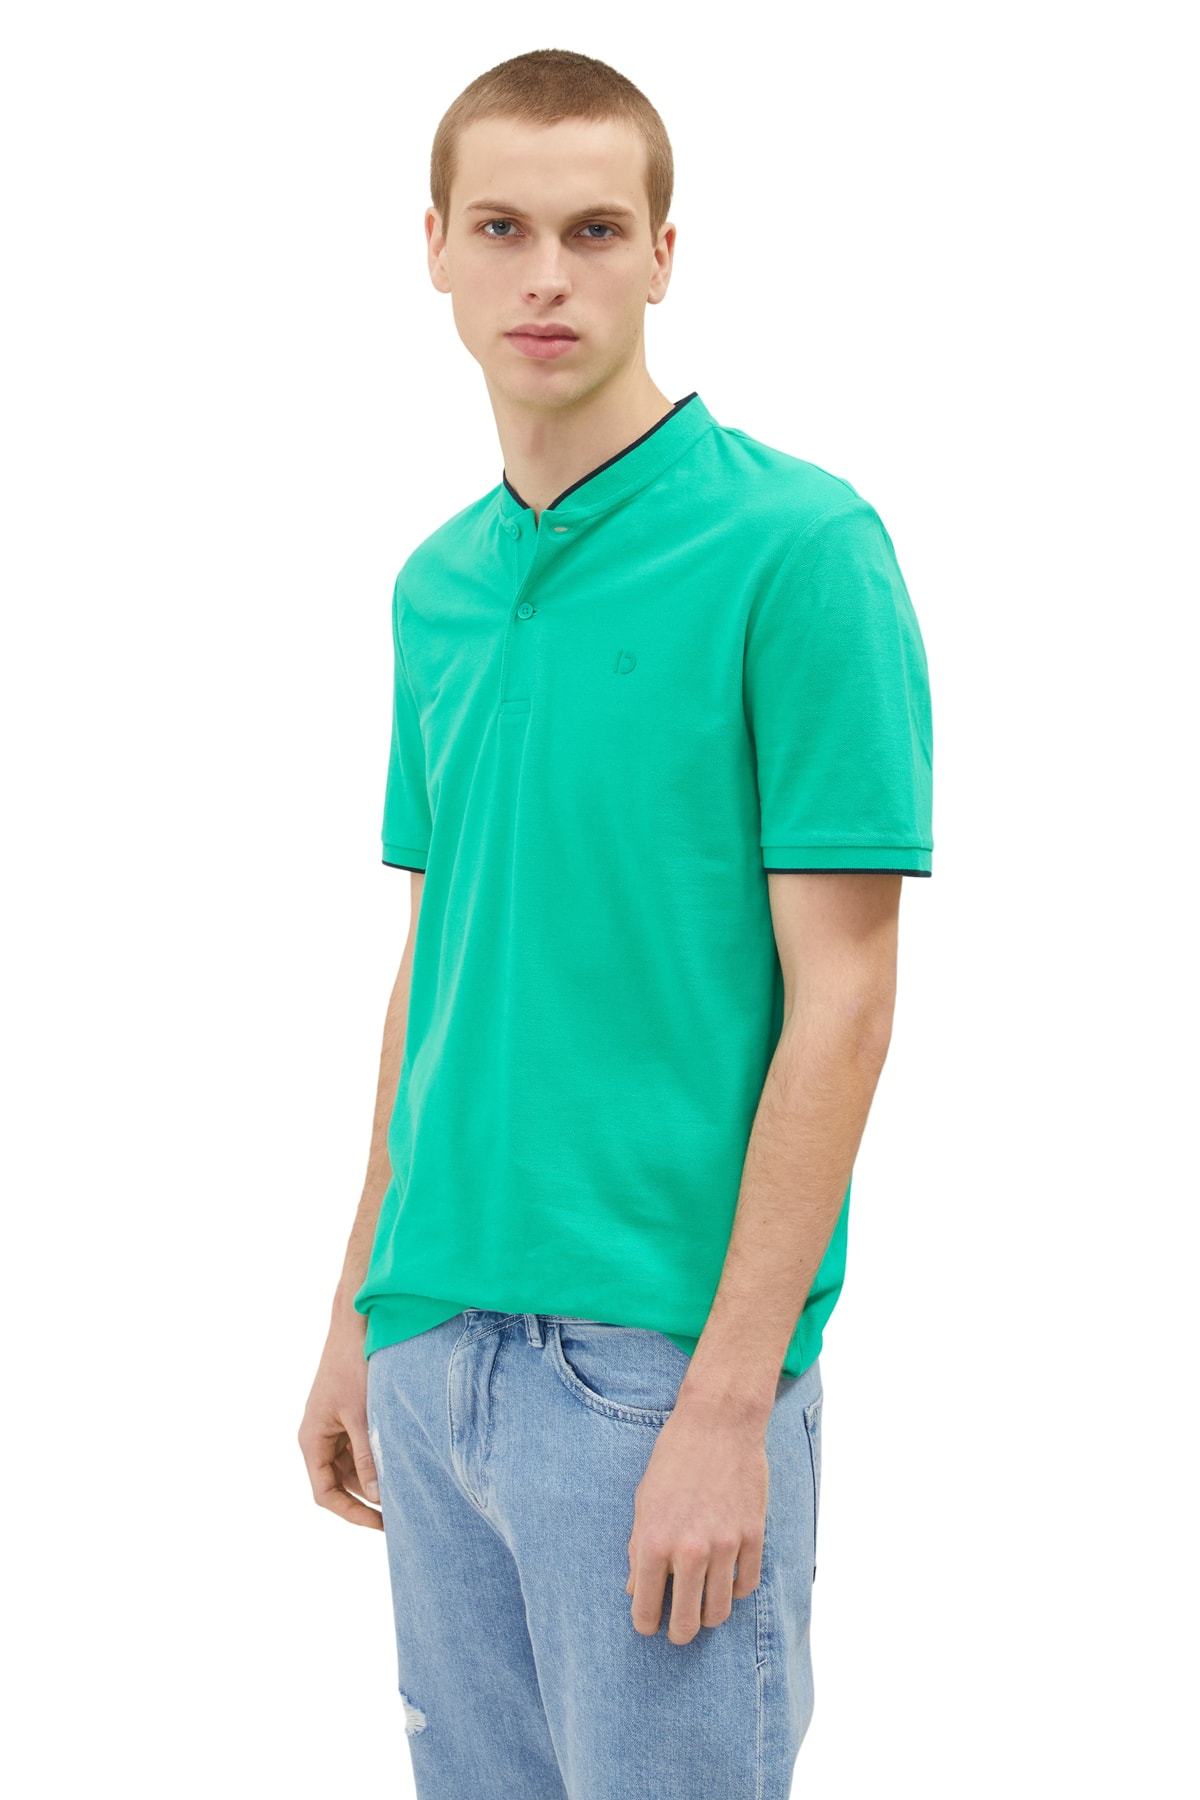 Футболка-поло – зеленая – стандартного кроя Tom Tailor Denim, зеленый футболка поло – зеленая – стандартного кроя tom tailor denim зеленый